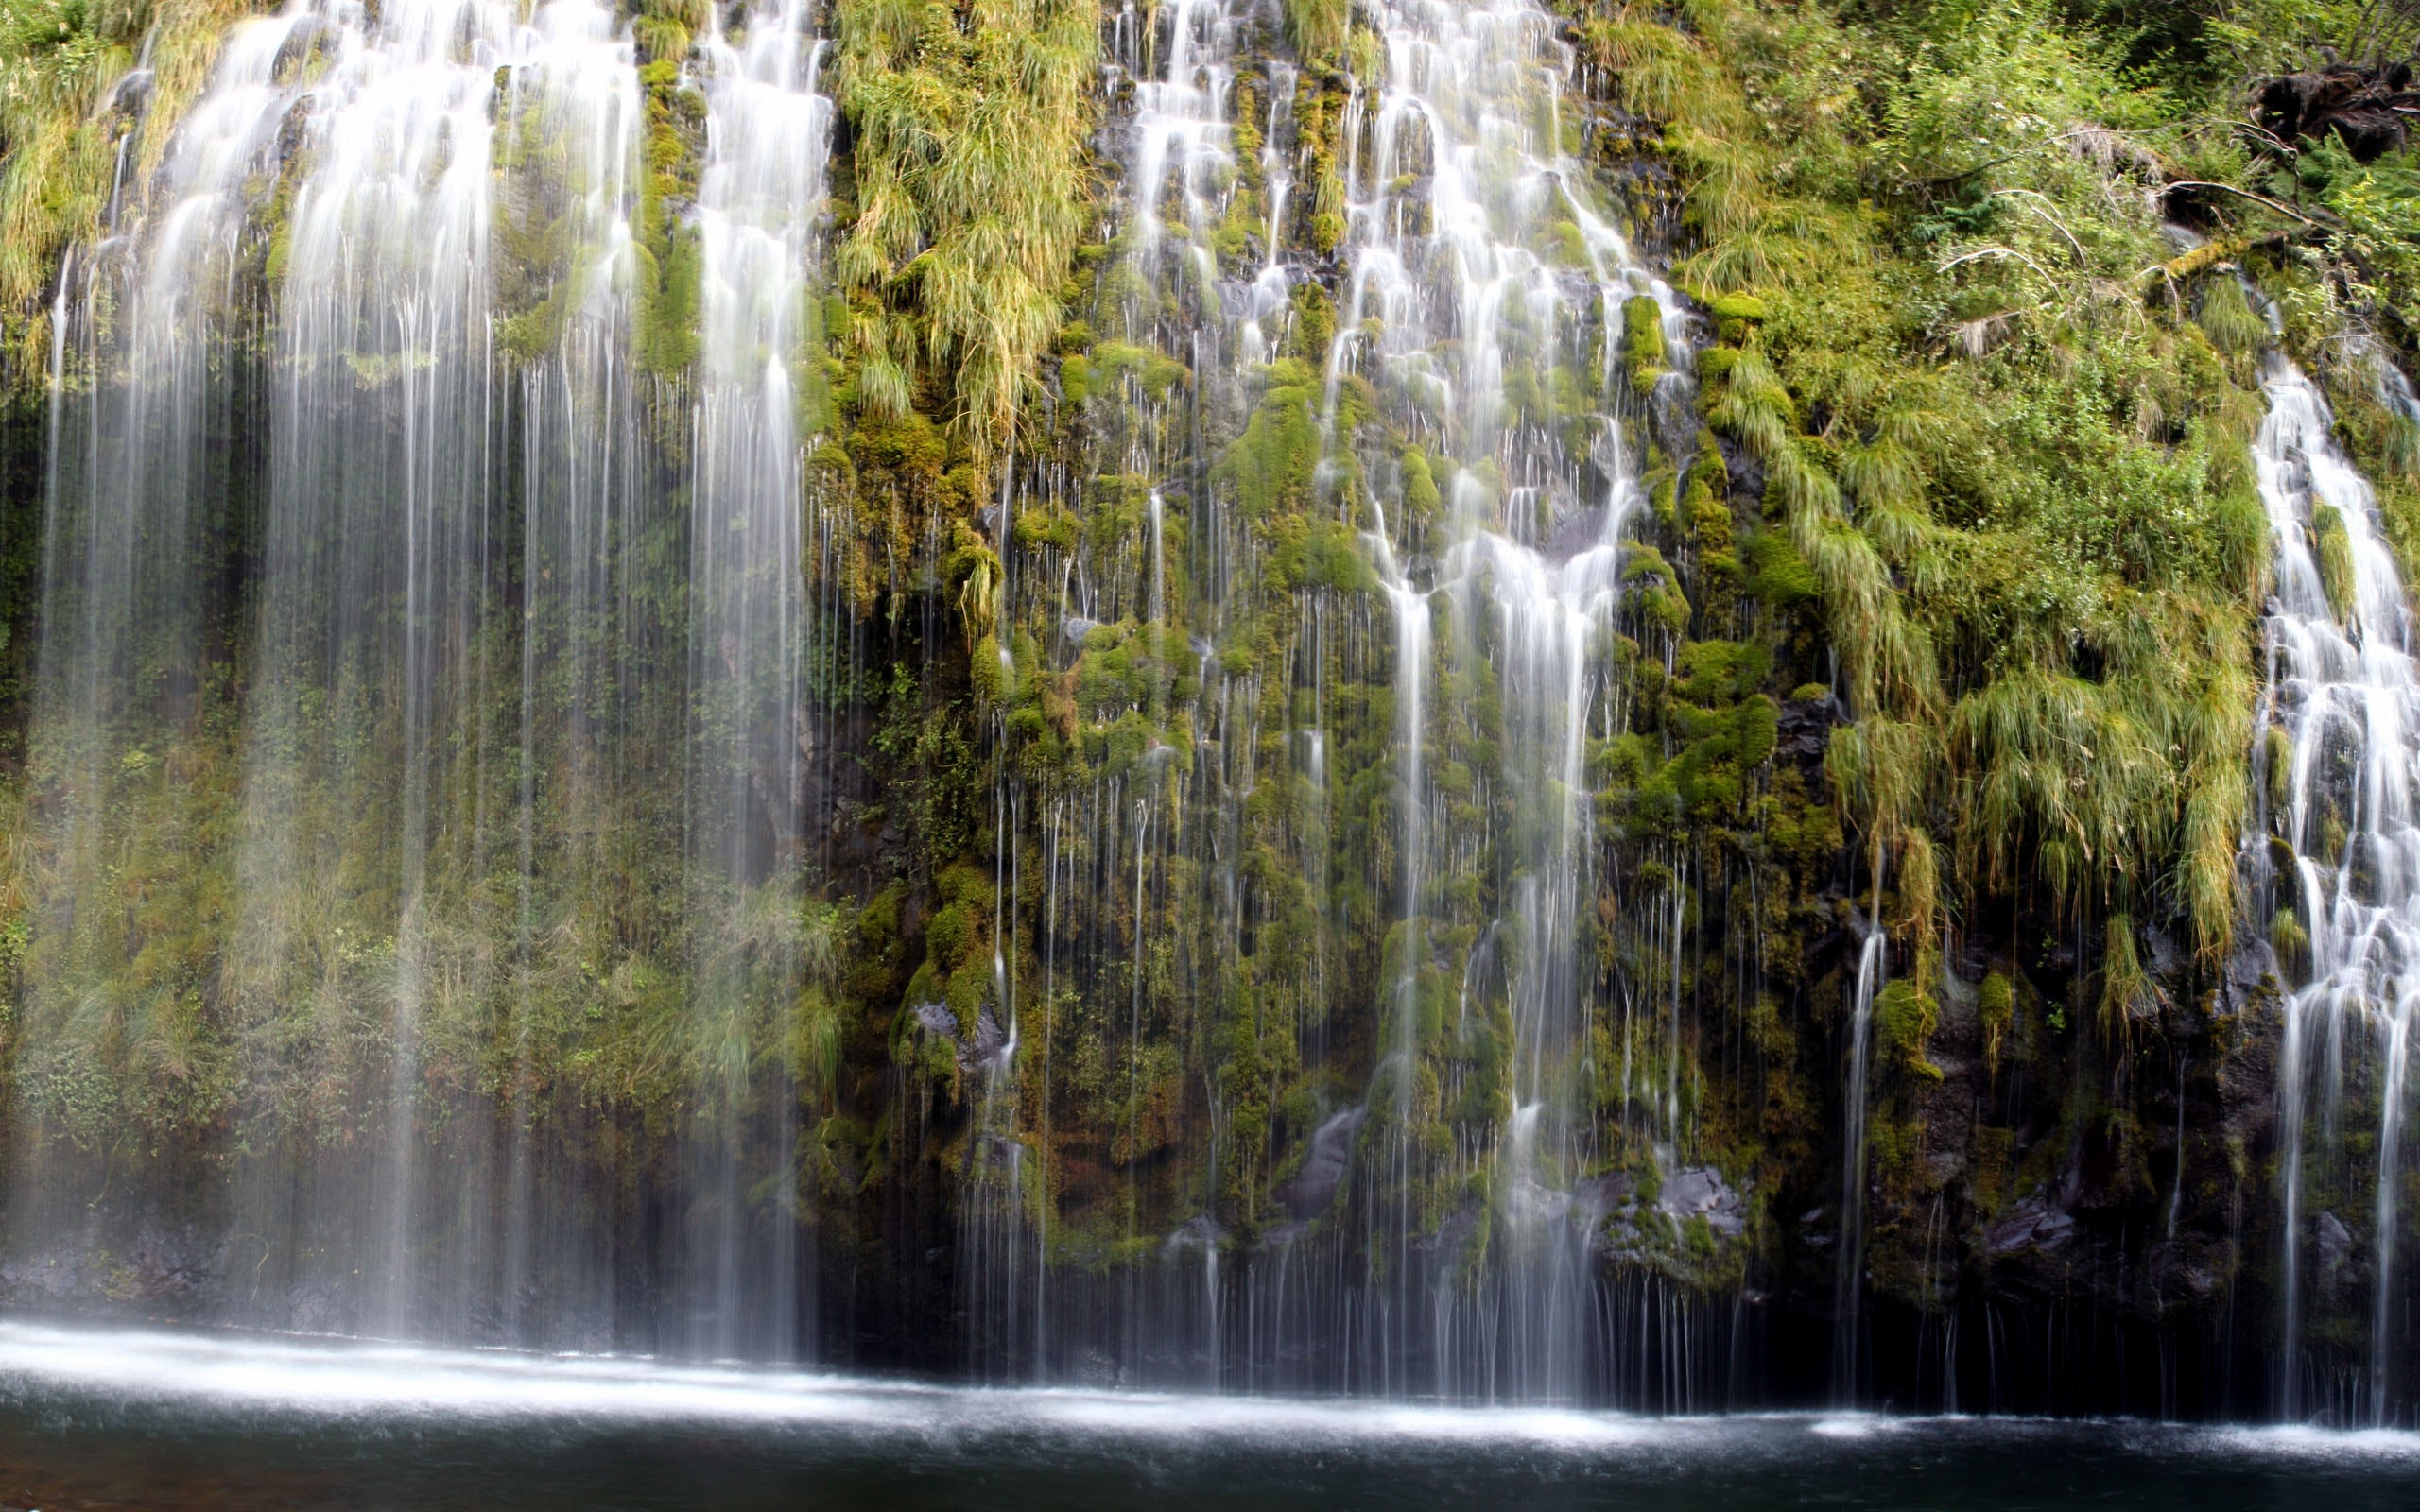 Обои на телефон на большой экран. Живая природа водопады. Красивые водопады. Живые водопады. Водопад картинки.